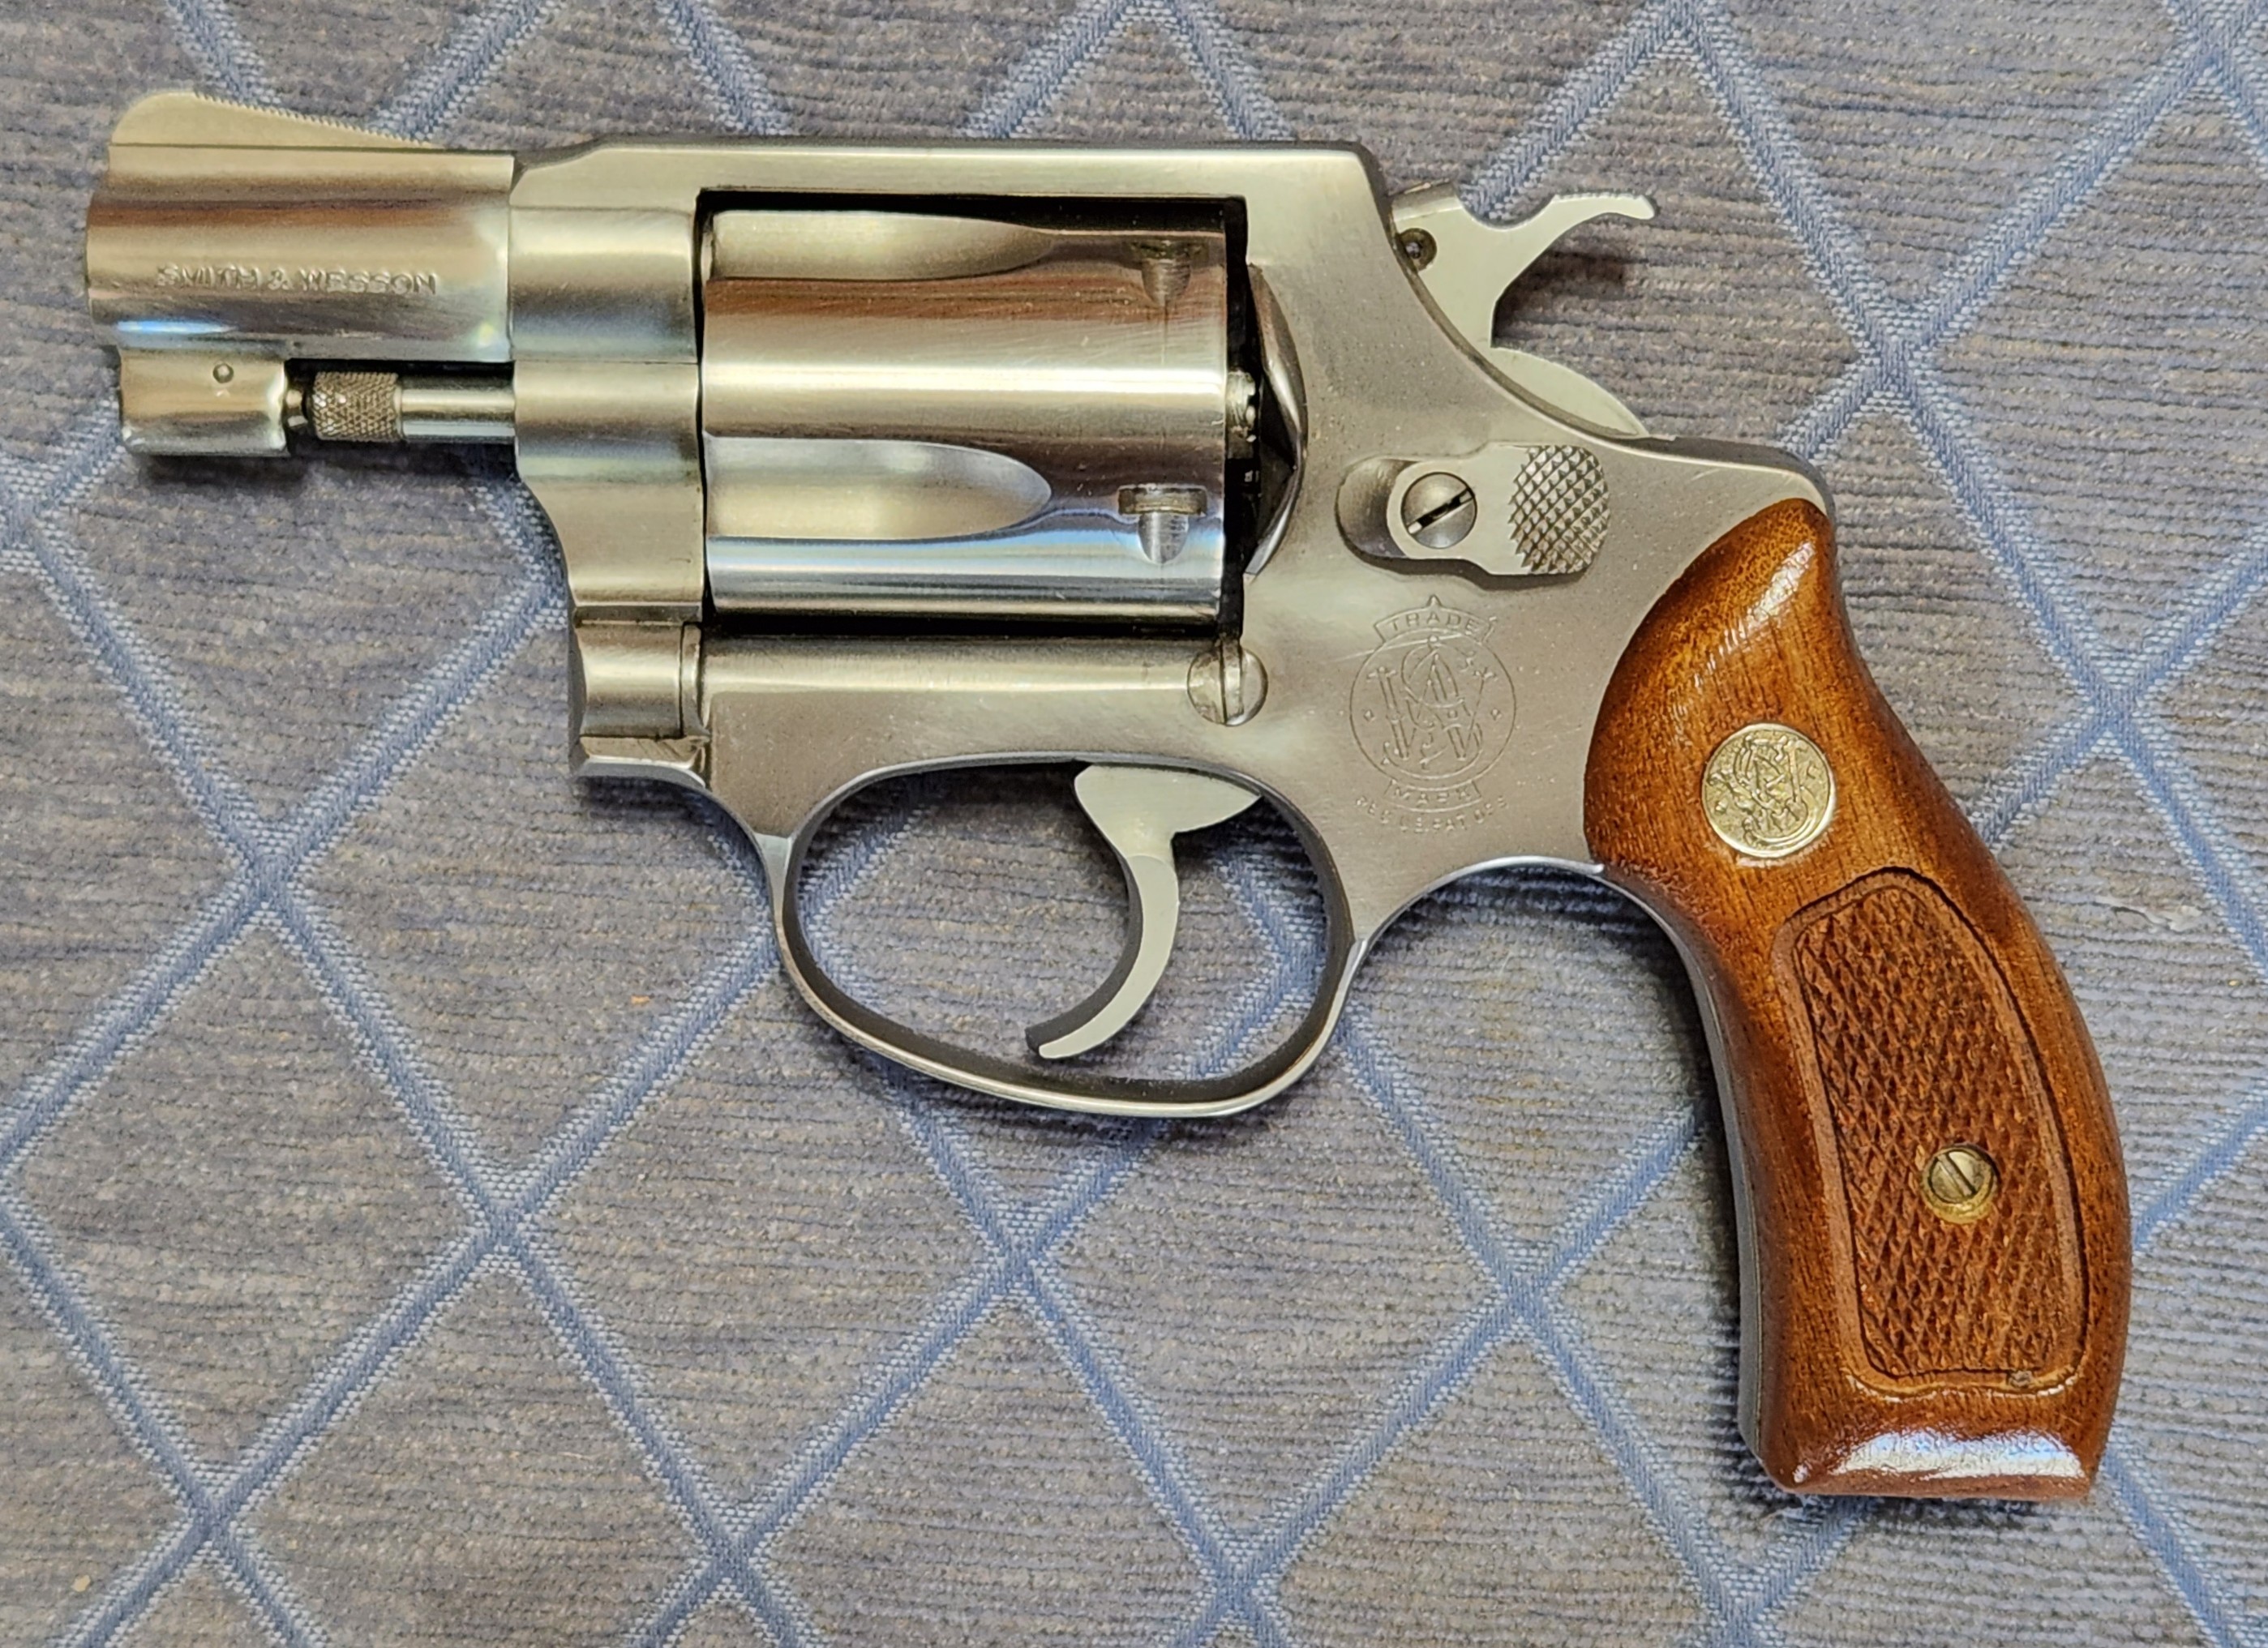 Item: Smith & Wesson Mod. 60 Chiefs Special Revolver